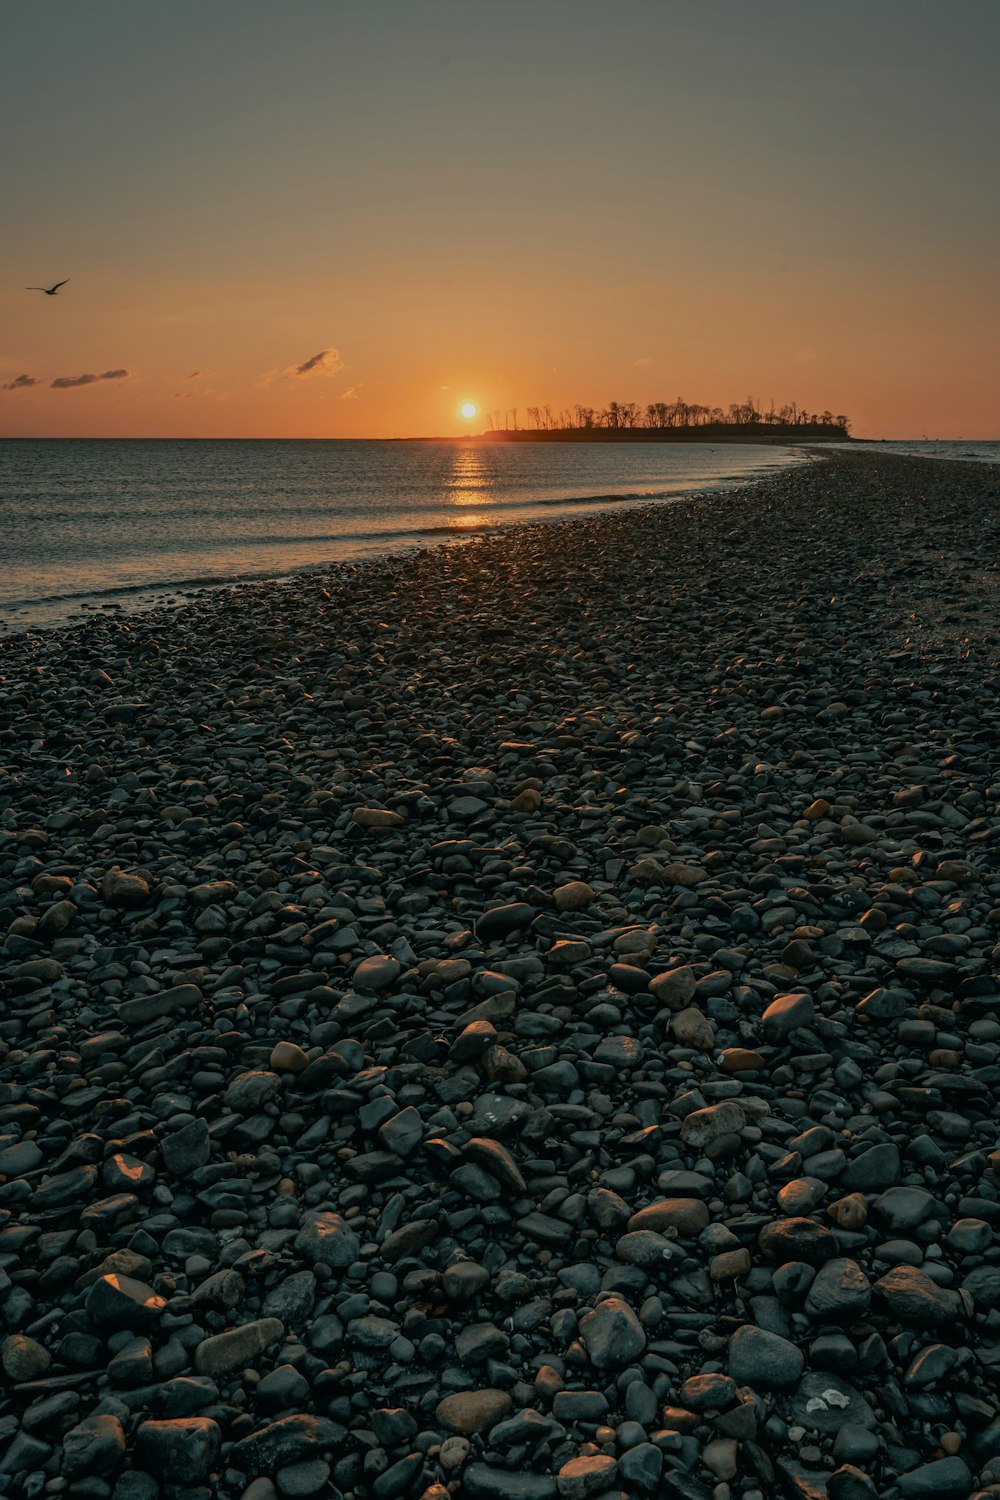 pedras pretas e marrons na praia durante o pôr do sol